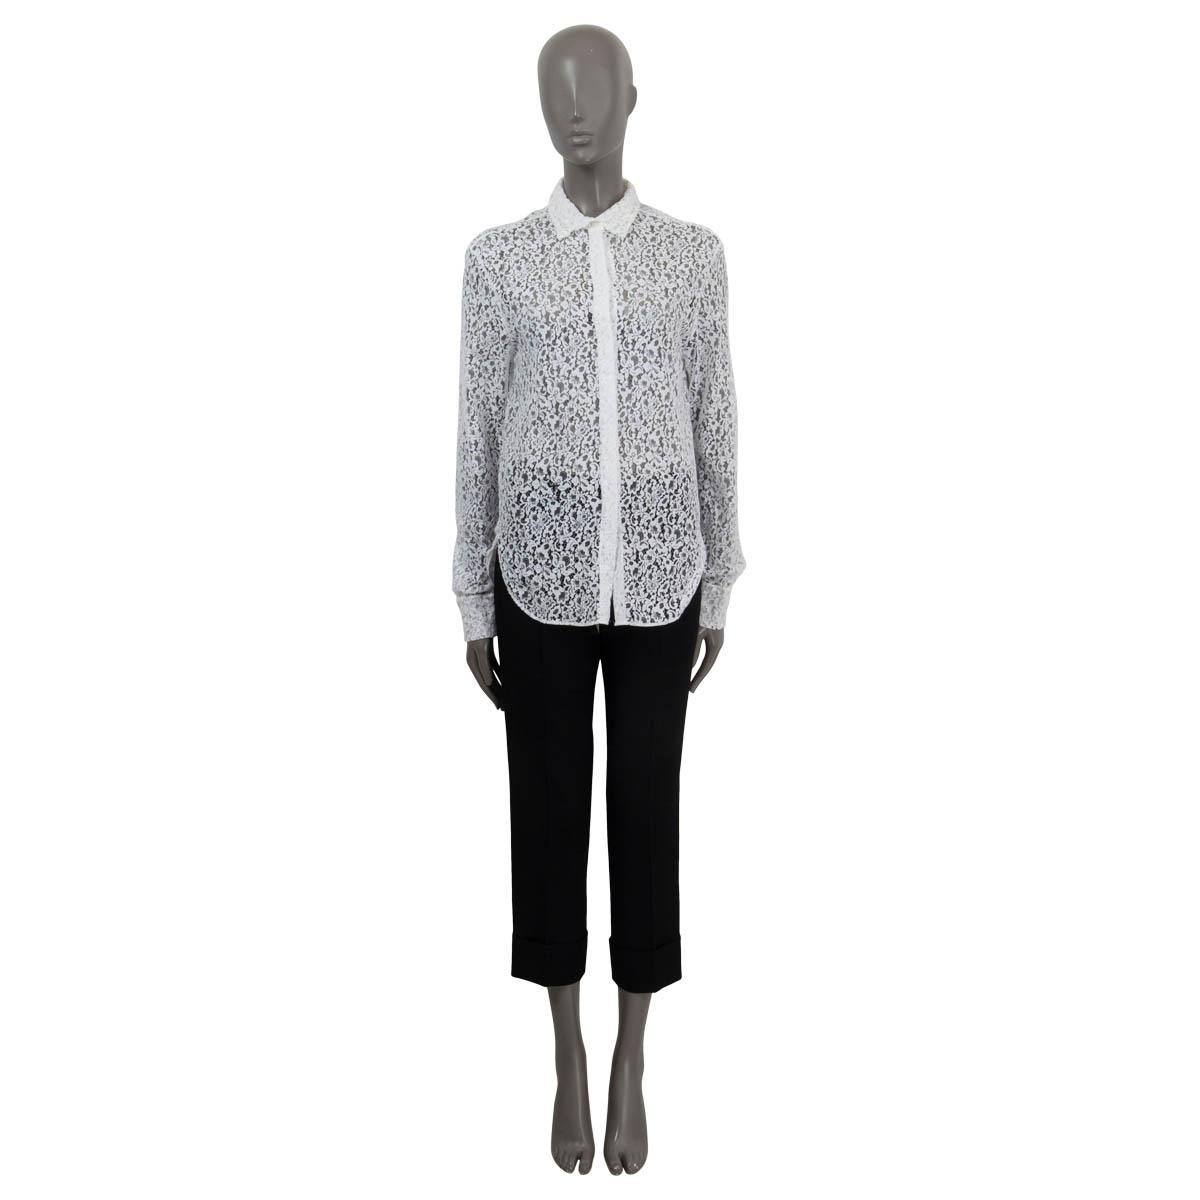 Chemise en dentelle semi-transparente 100% authentique Christian Dior en coton blanc (77%) et polyamide (23%). Il présente des manches longues, des poignets boutonnés et le logo 